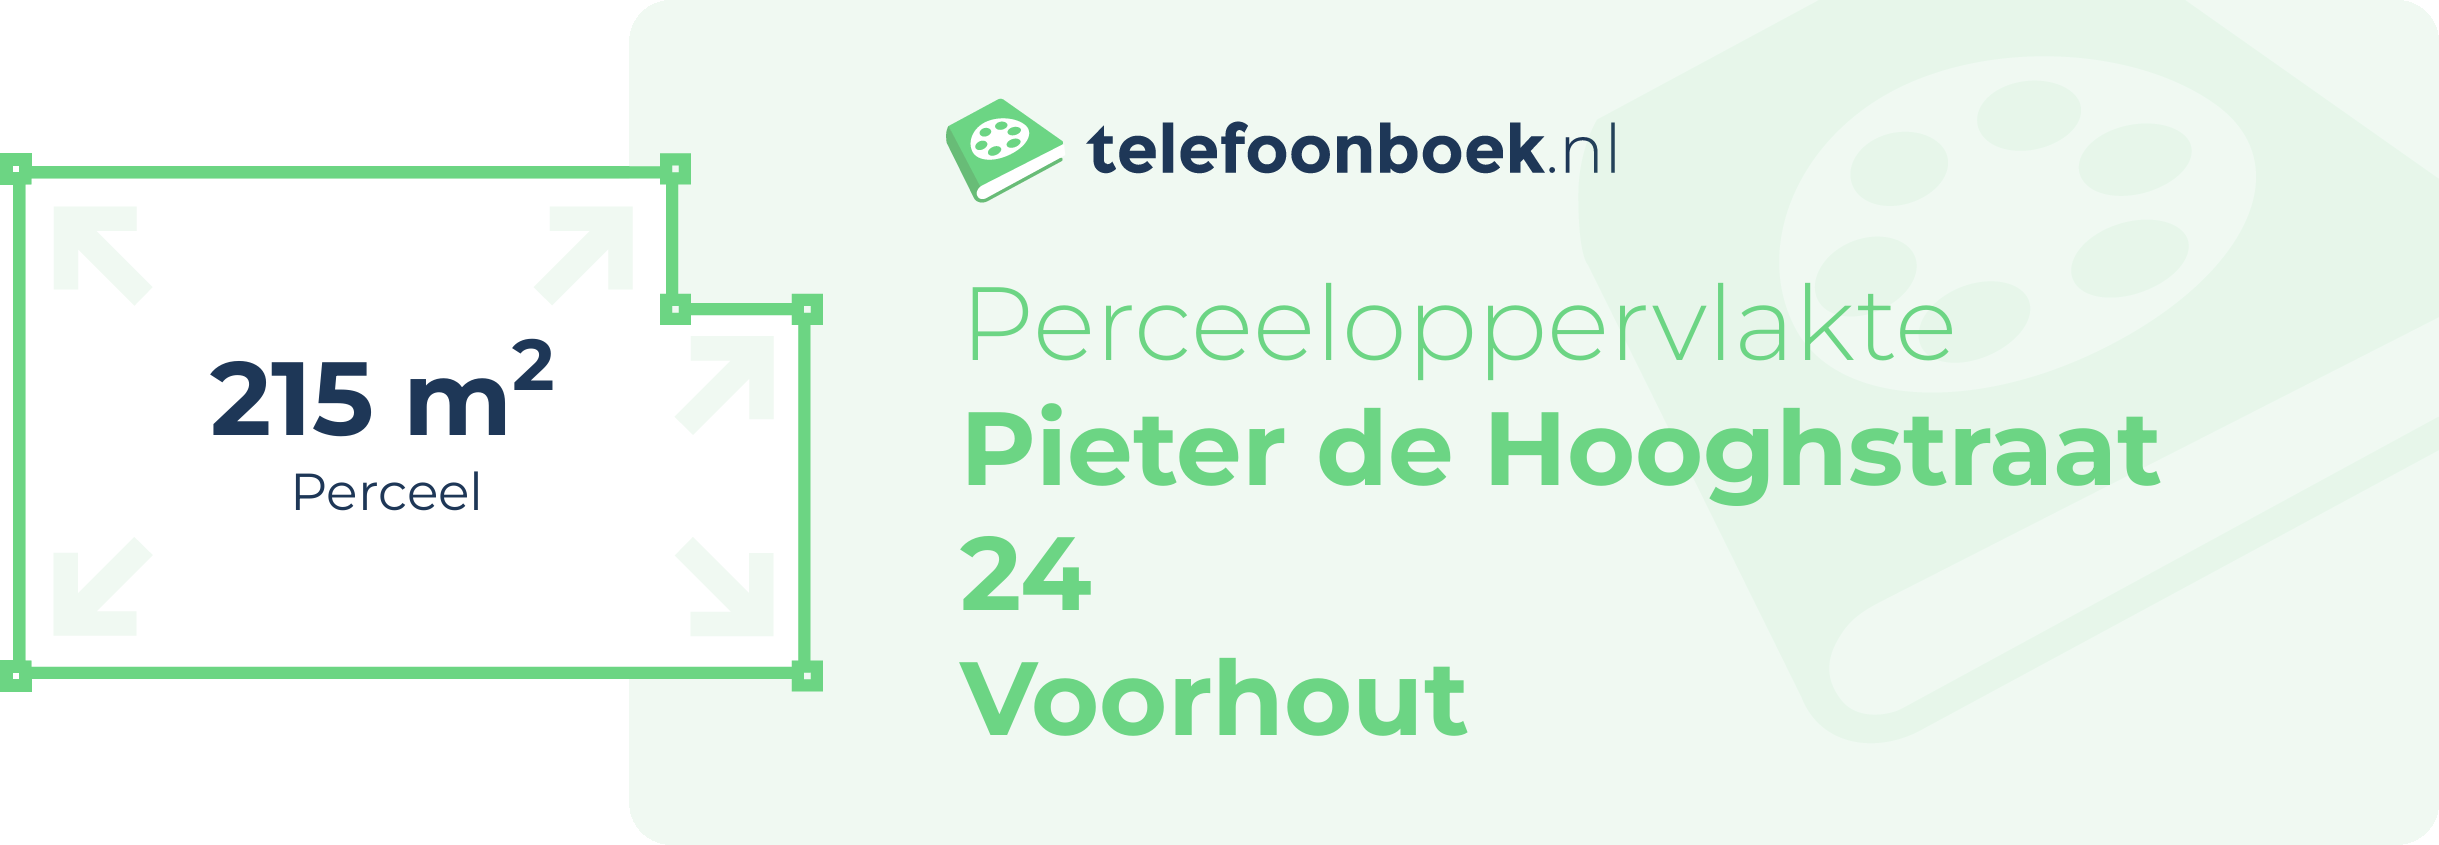 Perceeloppervlakte Pieter De Hooghstraat 24 Voorhout